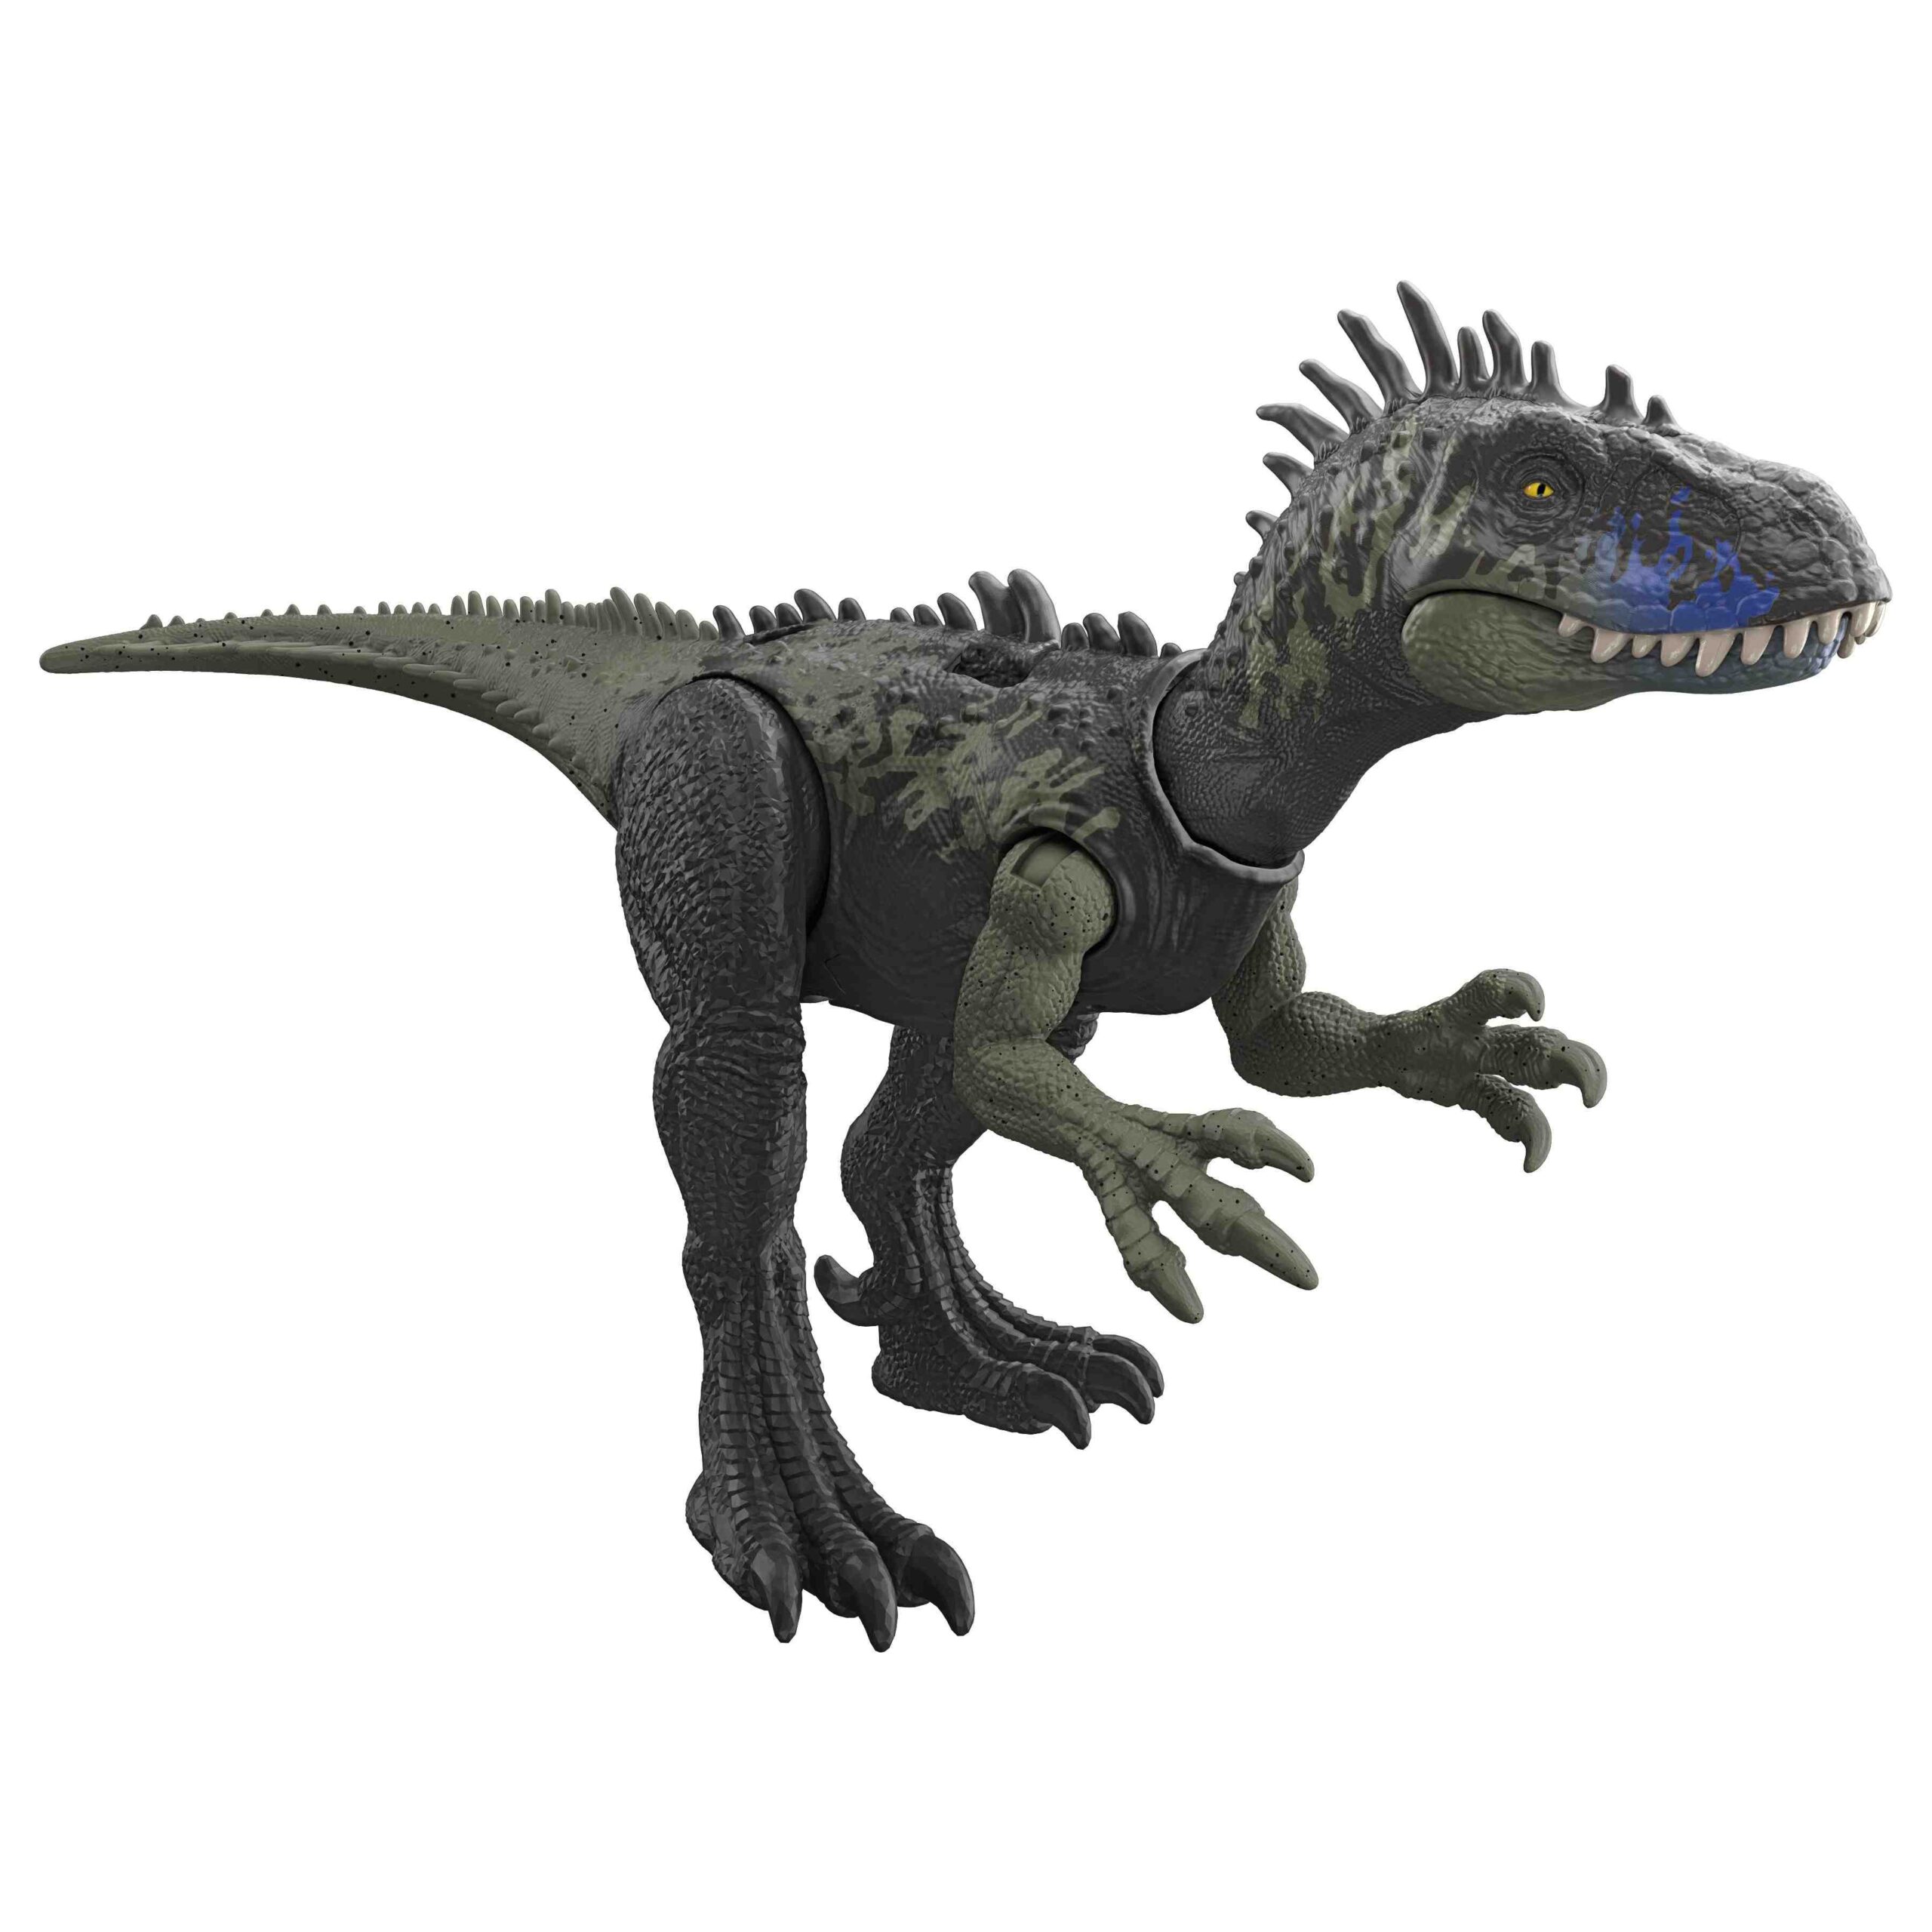 Λαμπάδα Jurassic World Νέοι Δεινόσαυροι με Κινούμενα Μέλη, Λειτουργίες Επίθεσης & Ήχους HLP14 - Jurassic World